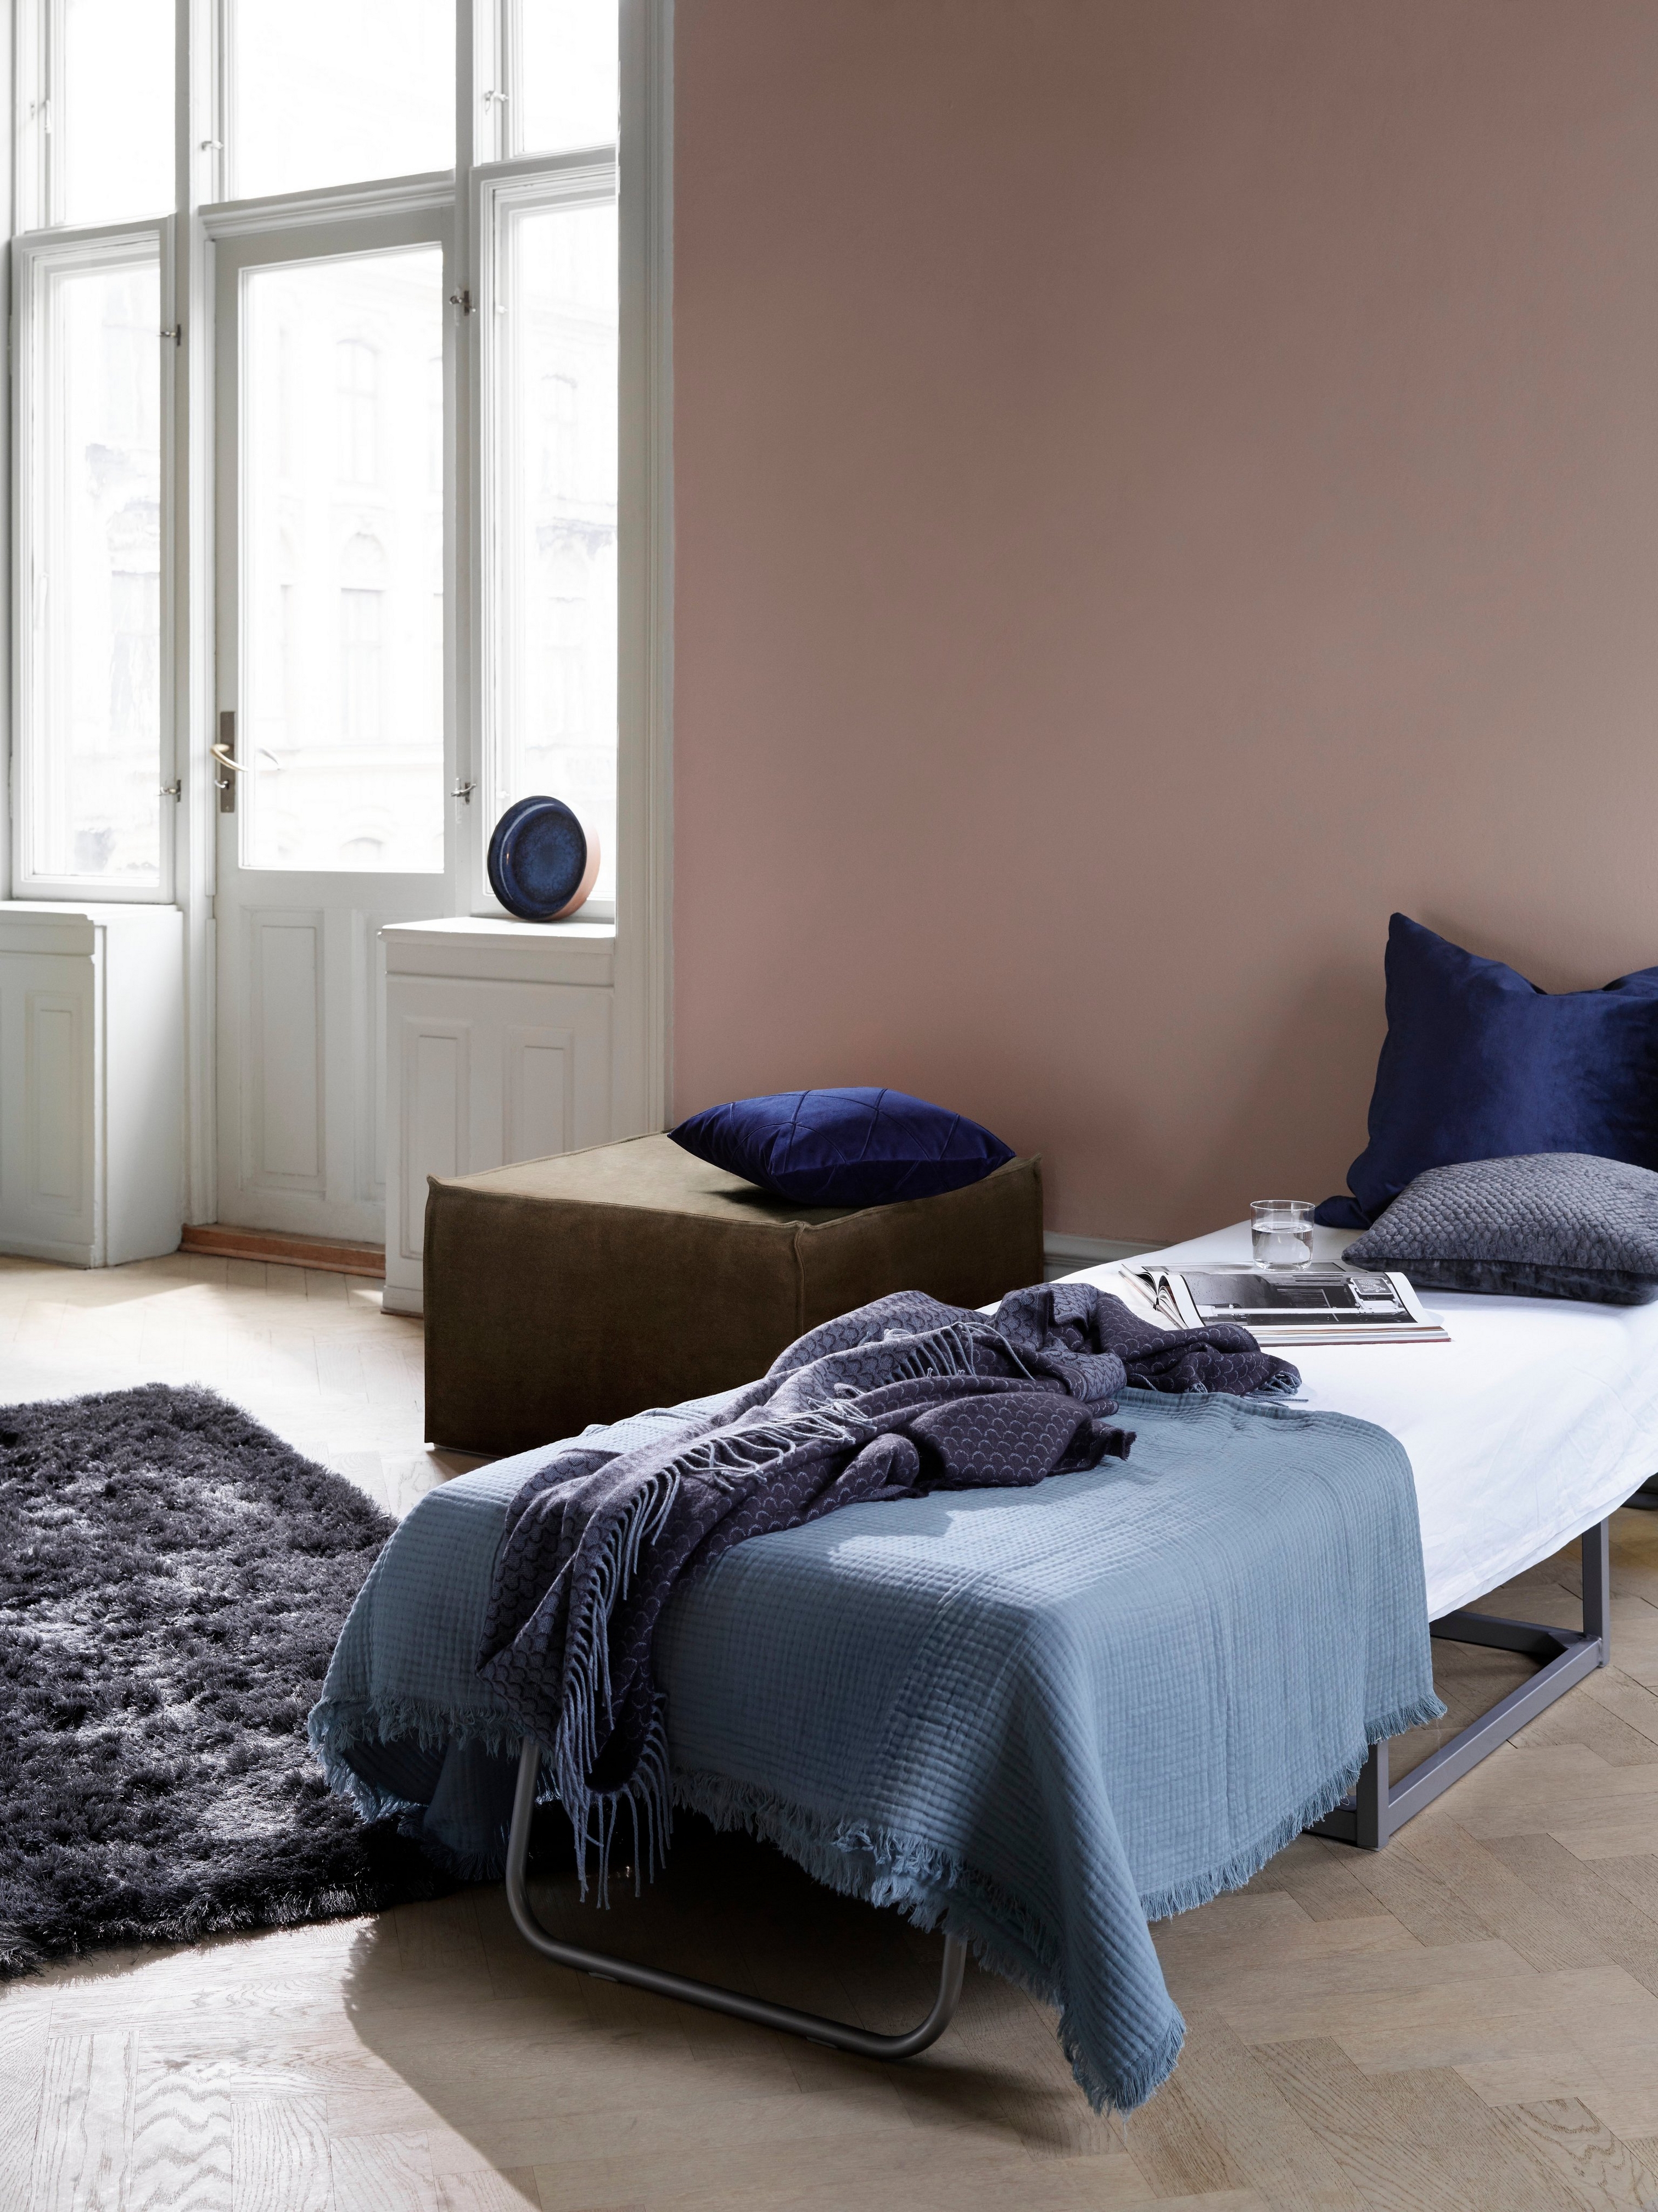 Xtra 腳凳在迷人房間的明亮窗戶旁有客床、藍色寢具和深色毛絨地毯。